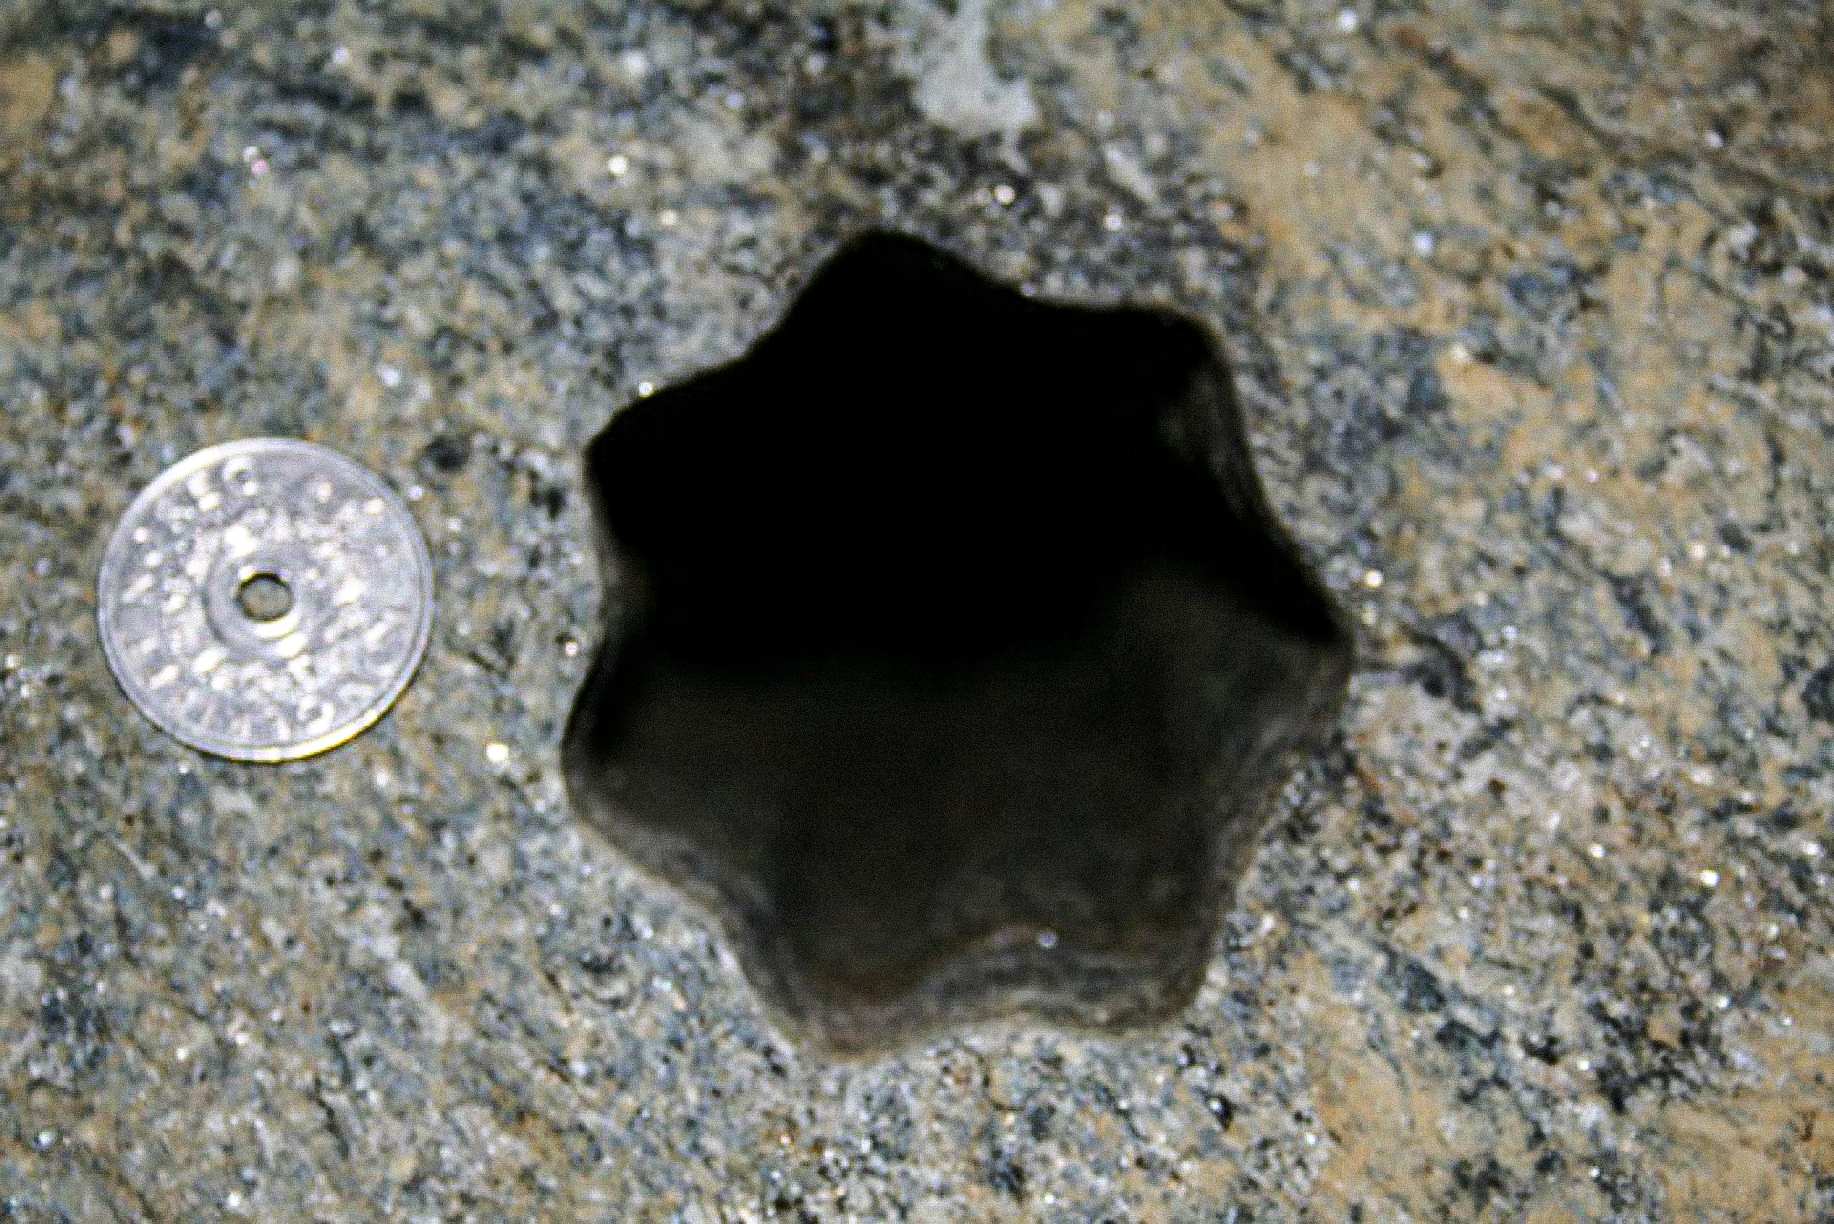 Αυτή η τρύπα σε σχήμα αστεριού (με επτά πλευρές) βρέθηκε από εργολάβους την Παρασκευή 30 Νοεμβρίου 2007 στη Βόλντα της Νορβηγίας. Το νορβηγικό νόμισμα των 5 κορωνών έχει διάμετρο 25 mm. Η διάμετρος της οπής είναι περίπου 65 - 70 mm.